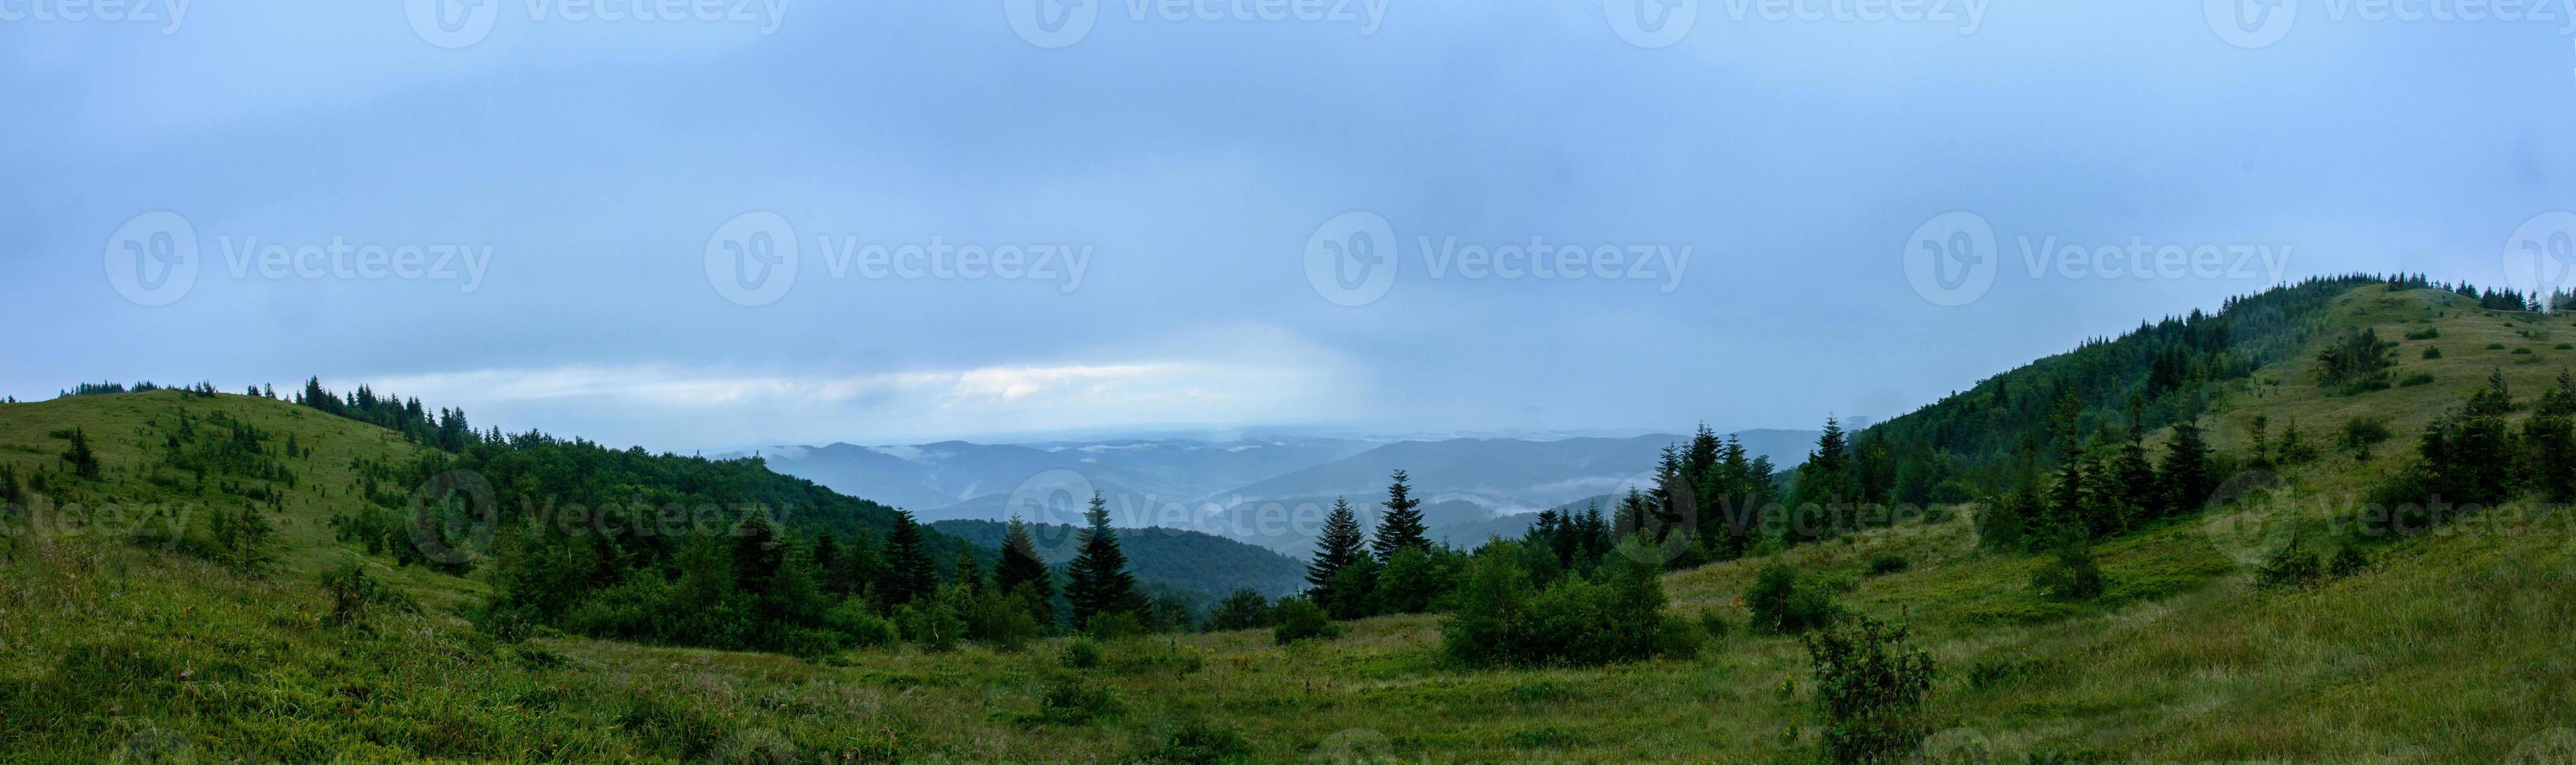 incredibile panorama sulla montagna yavorinka nei carpazi durante la pioggia foto